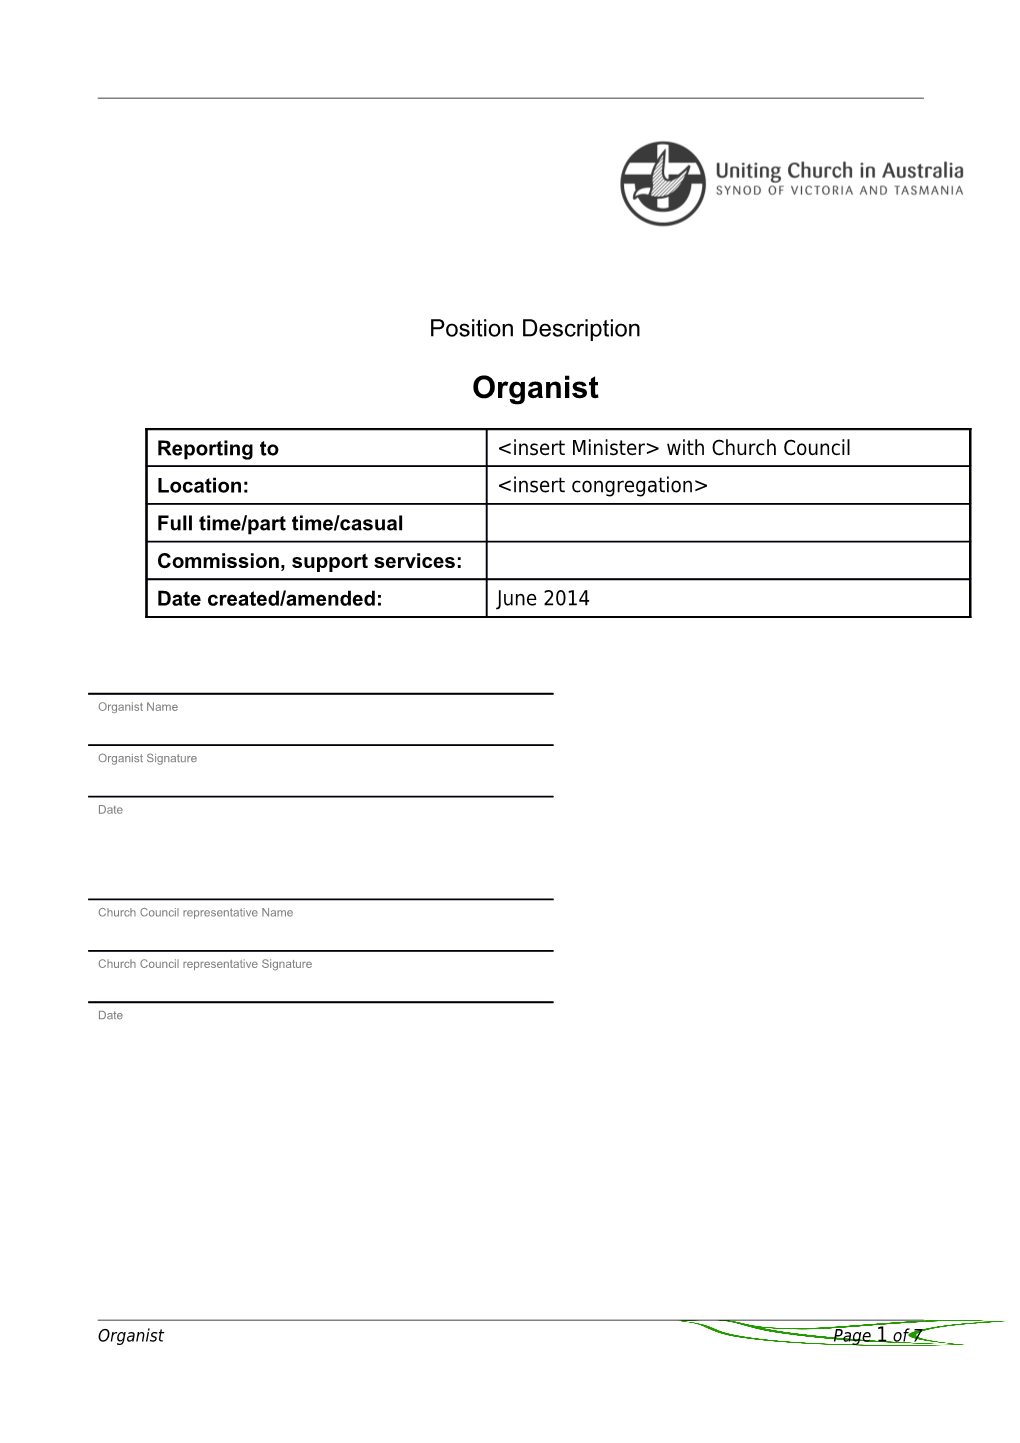 Organist Position Description - Appendix B